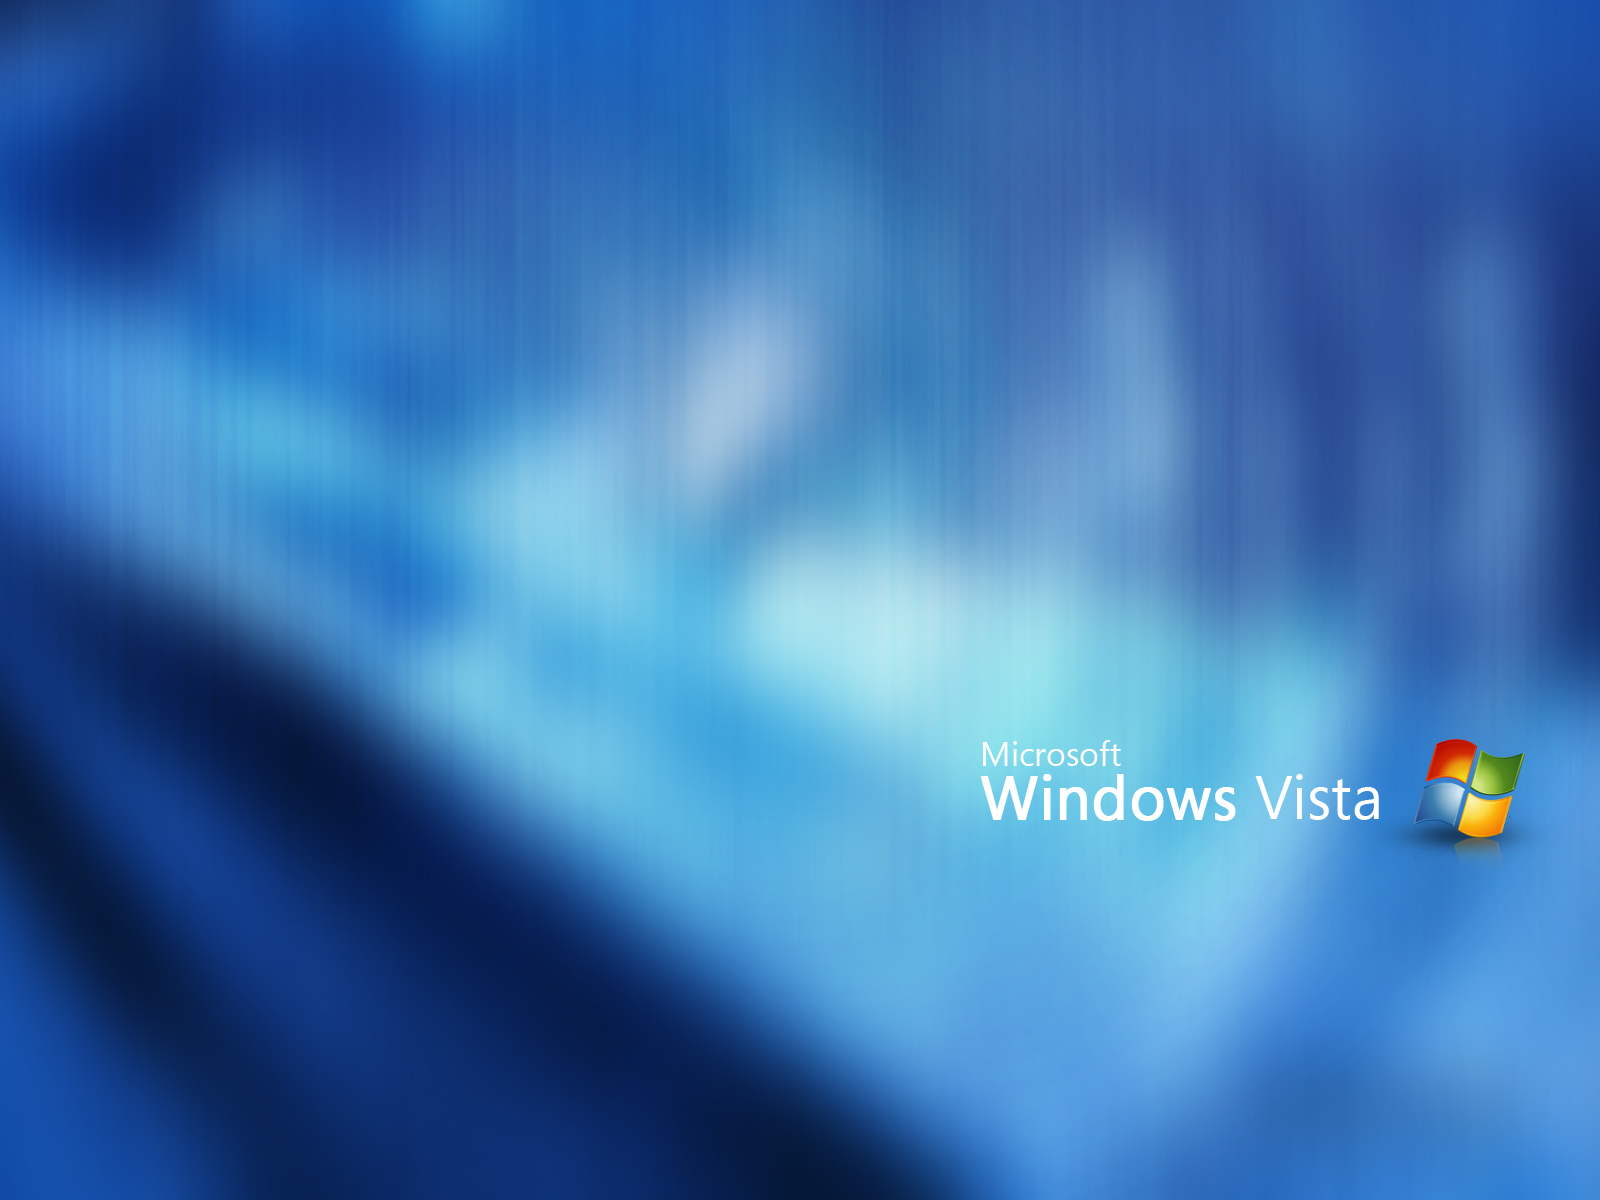 壁纸1600x1200Windows Vista超正壁纸集壁纸 Windows Vista超正壁纸集壁纸 Windows Vista超正壁纸集图片 Windows Vista超正壁纸集素材 其他壁纸 其他图库 其他图片素材桌面壁纸